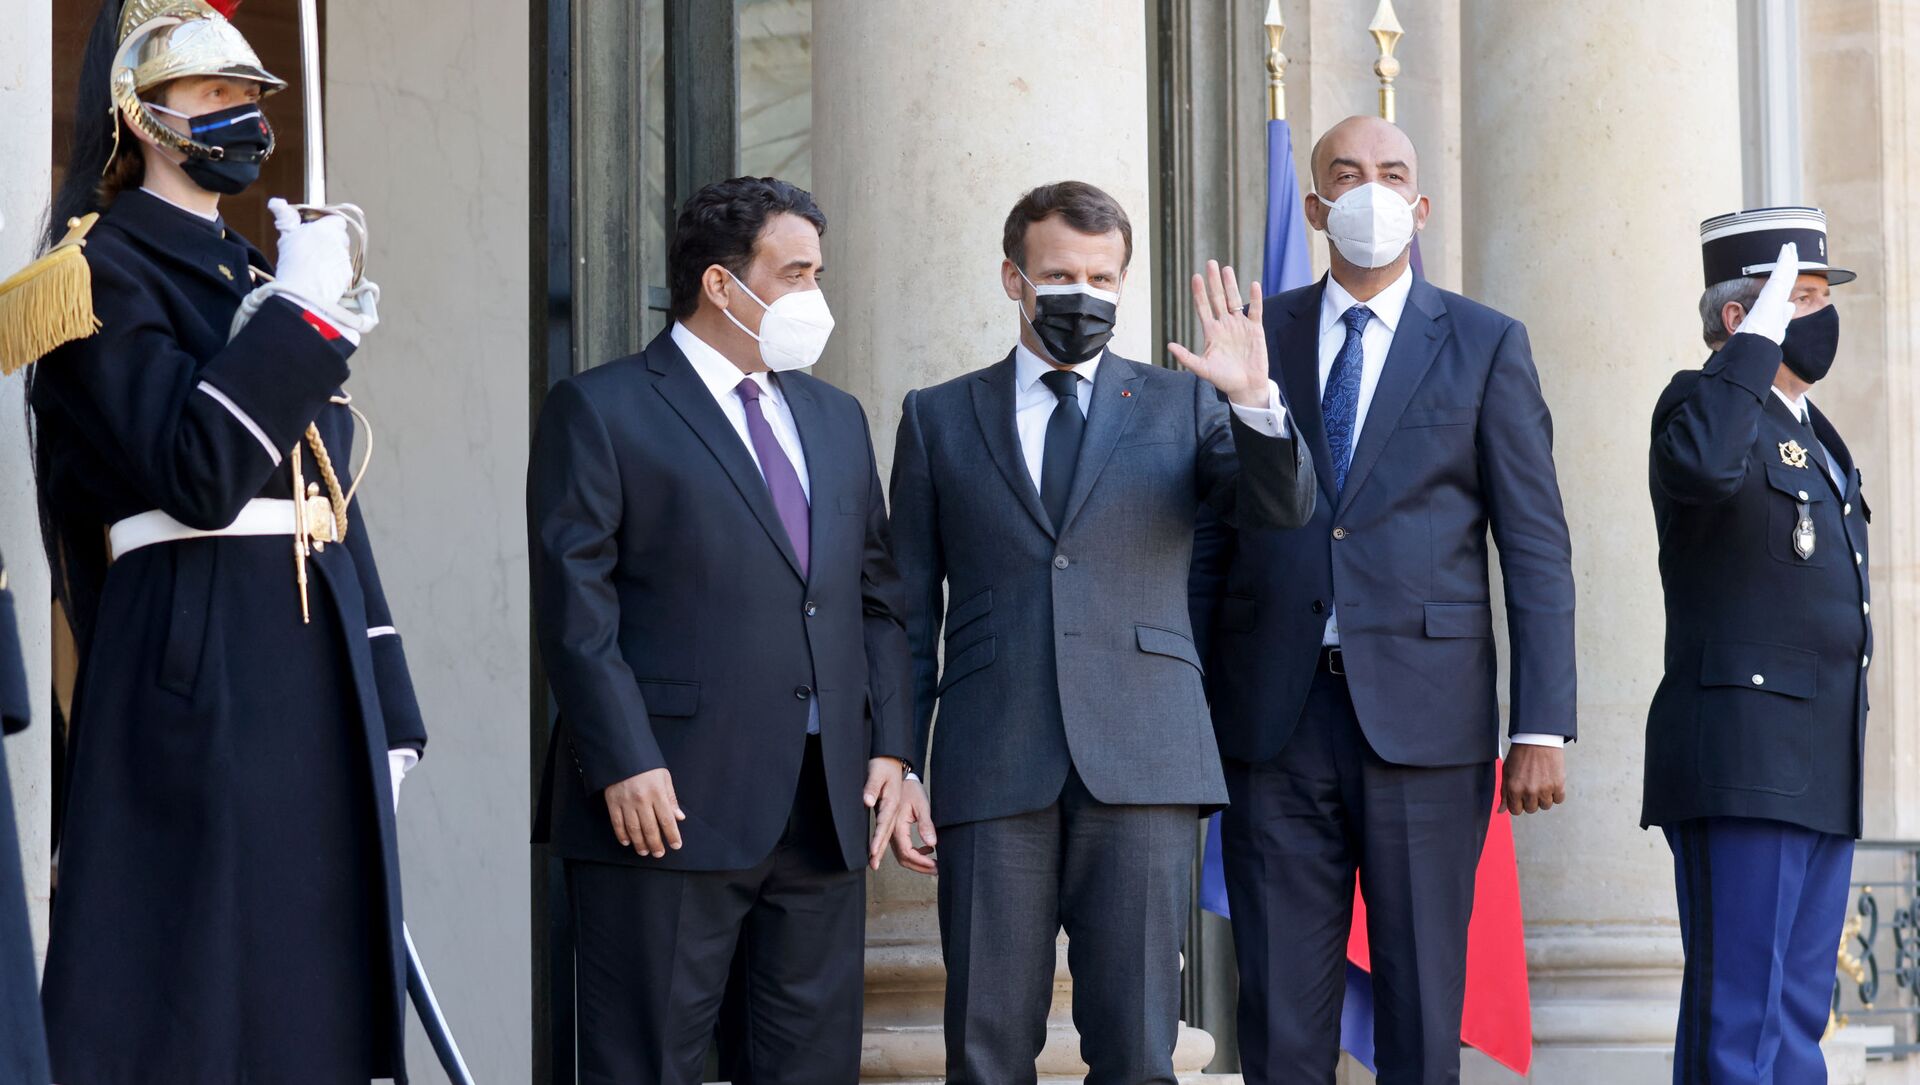 Le président français Emmanuel Macron (G) pose avec les dirigeants intérimaires de la Libye Mohamed El-Menfi (C) et Musa al-Koni (D) avant des entretiens au palais présidentiel de l'Elysée à Paris, le 23 mars 2021.  - Sputnik Afrique, 1920, 25.03.2021